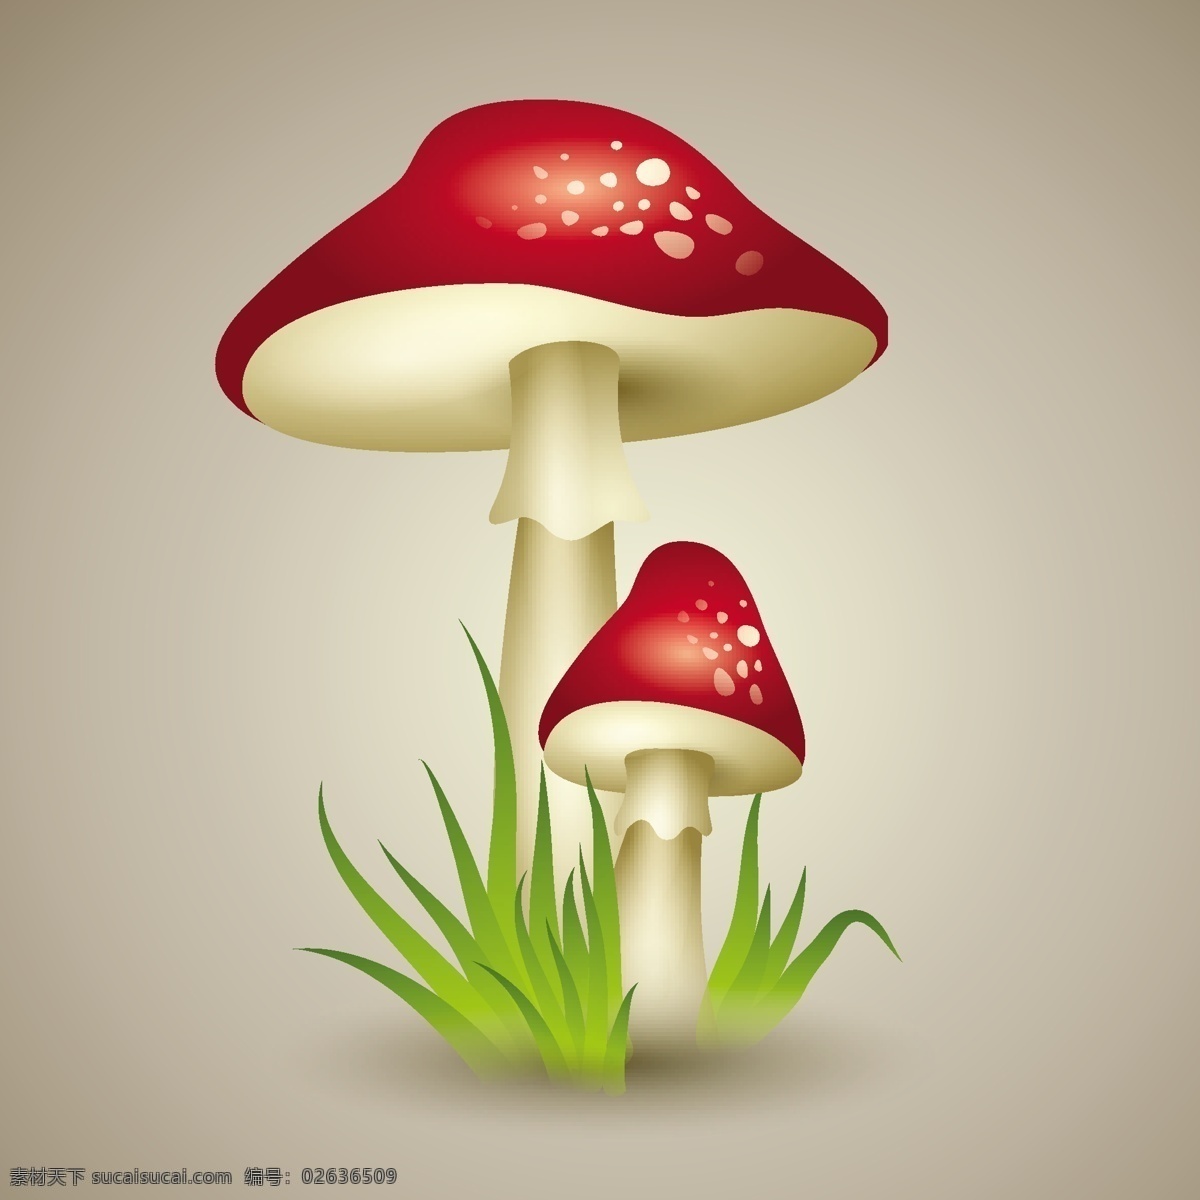 蘑菇 卡通蘑菇 黄色蘑菇 蘑菇伞 食用菌 童话故事 矢量蘑菇